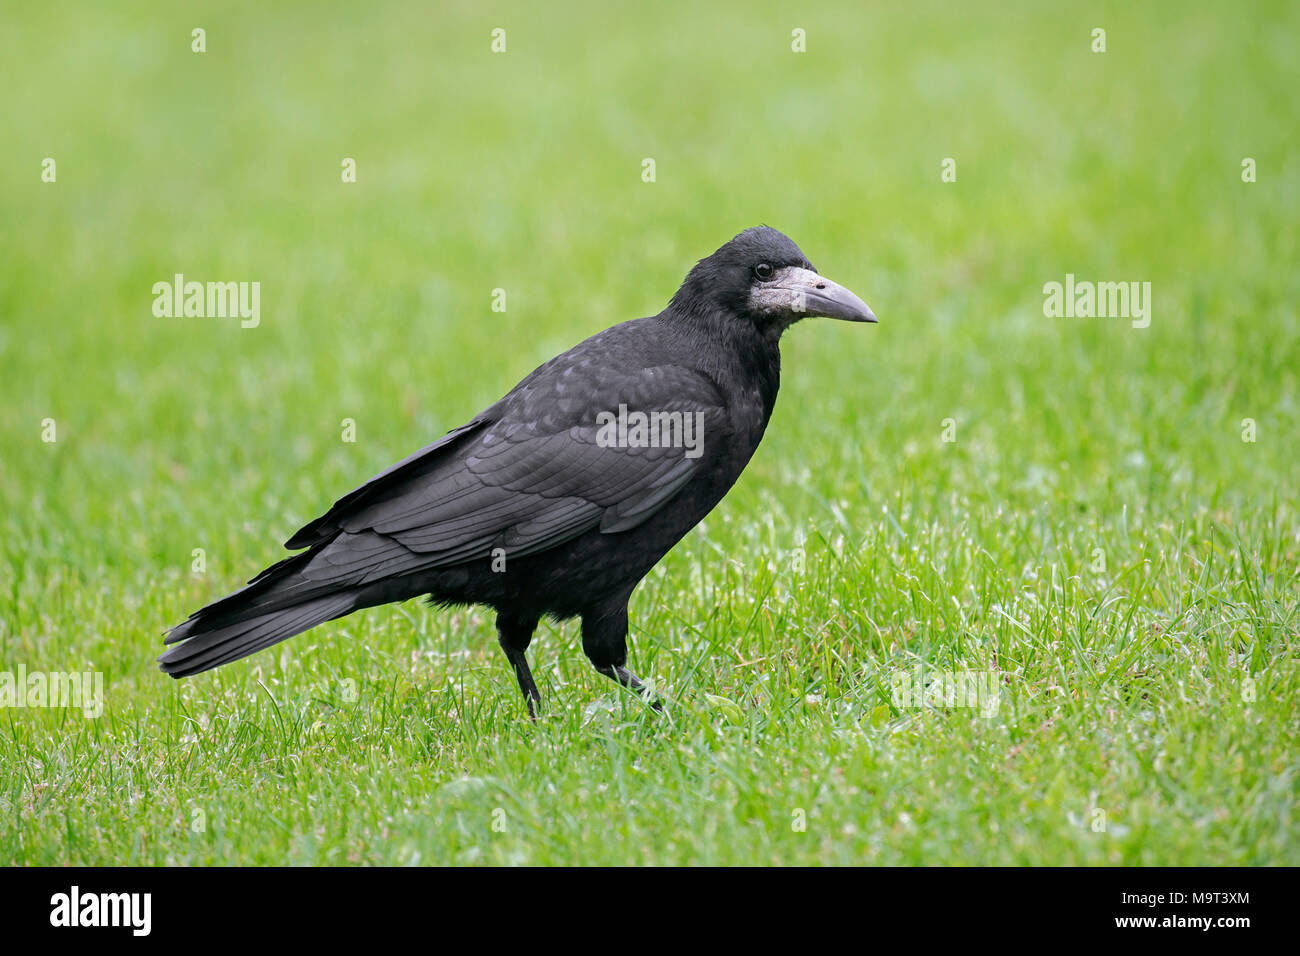 Corbeau freux (corvus frugilegus) se nourrissent dans les herbages / jardin pelouse Banque D'Images